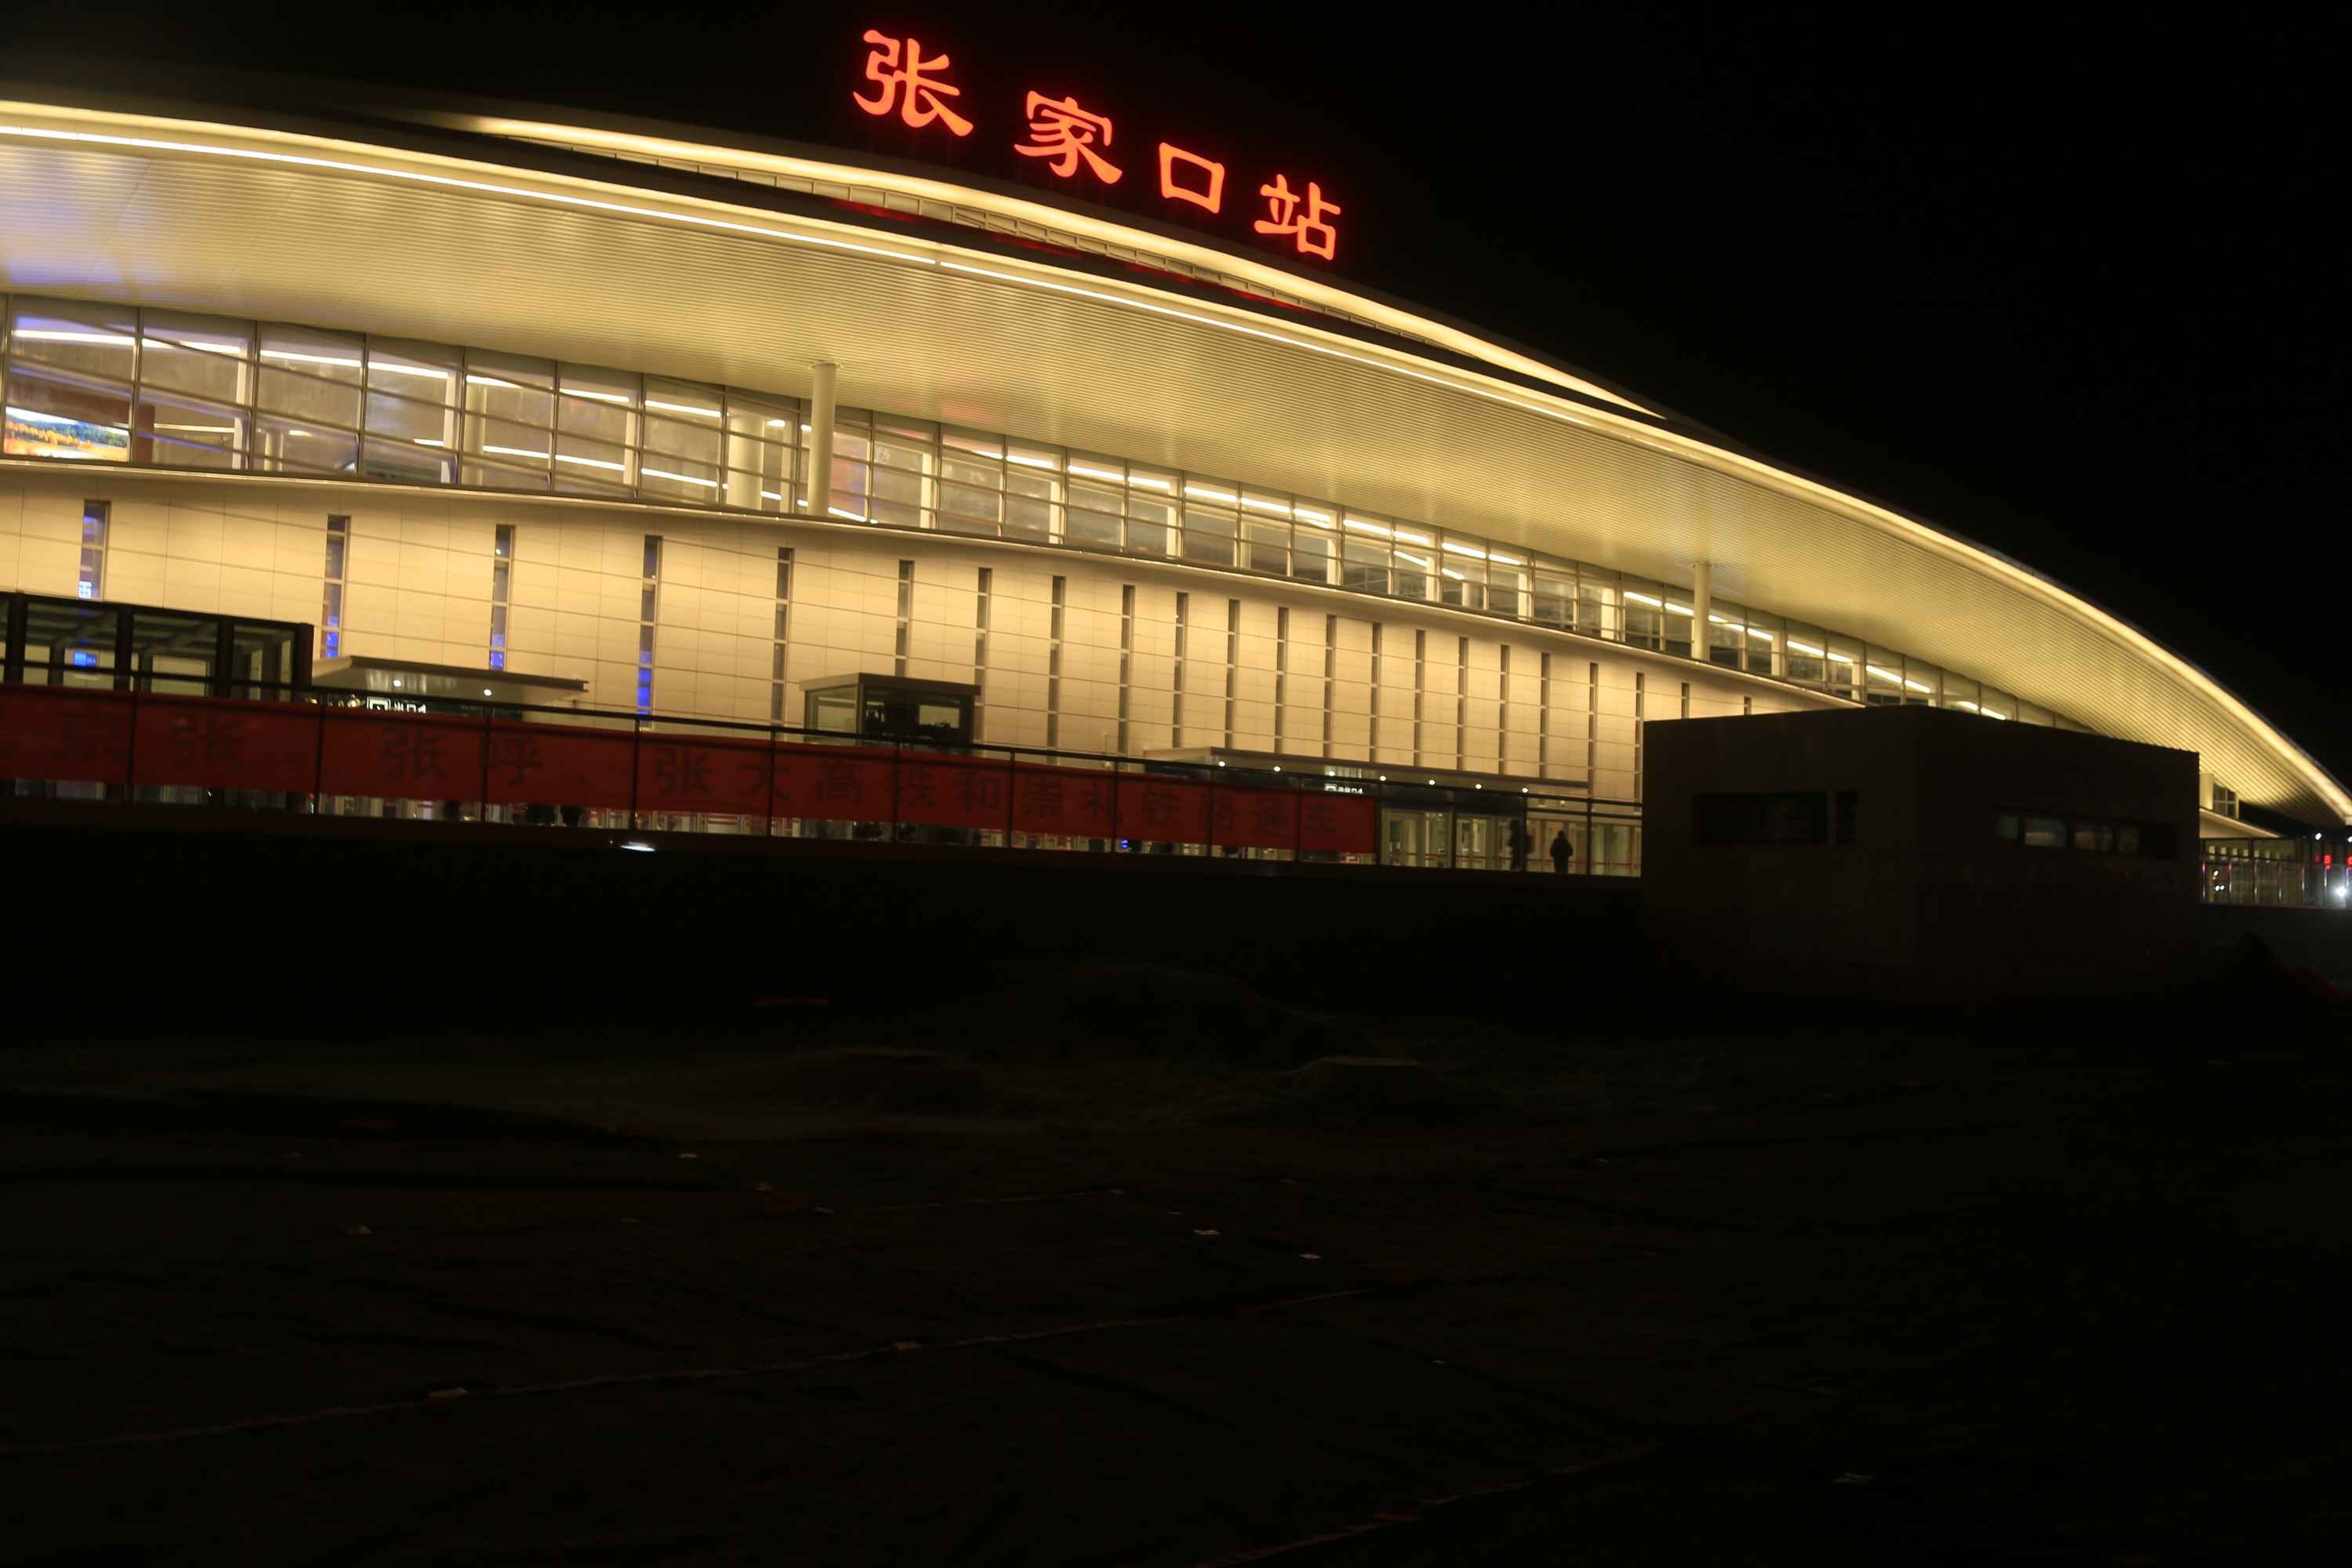 2022世界杯押注:京张铁路：见证百年车站风采